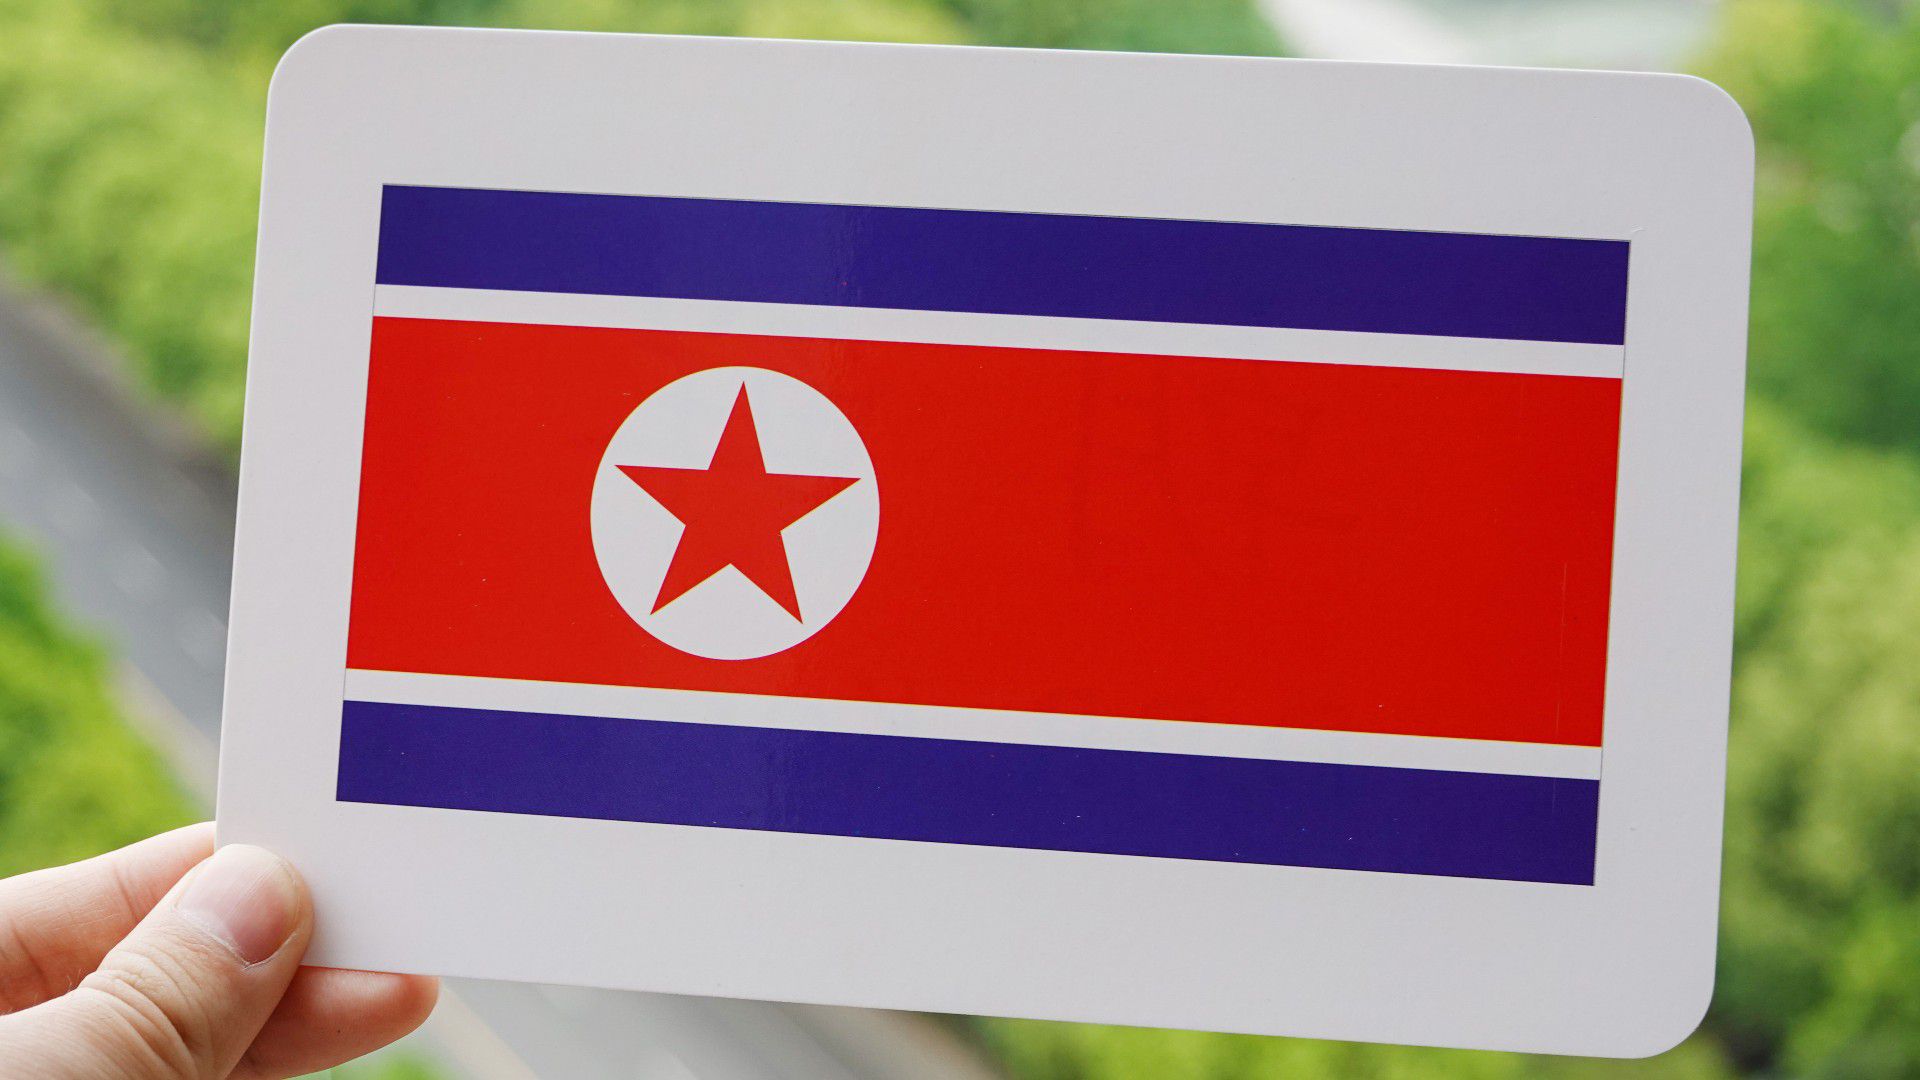 A NOB a hónap végén feloldja Észak-Korea felfüggesztését